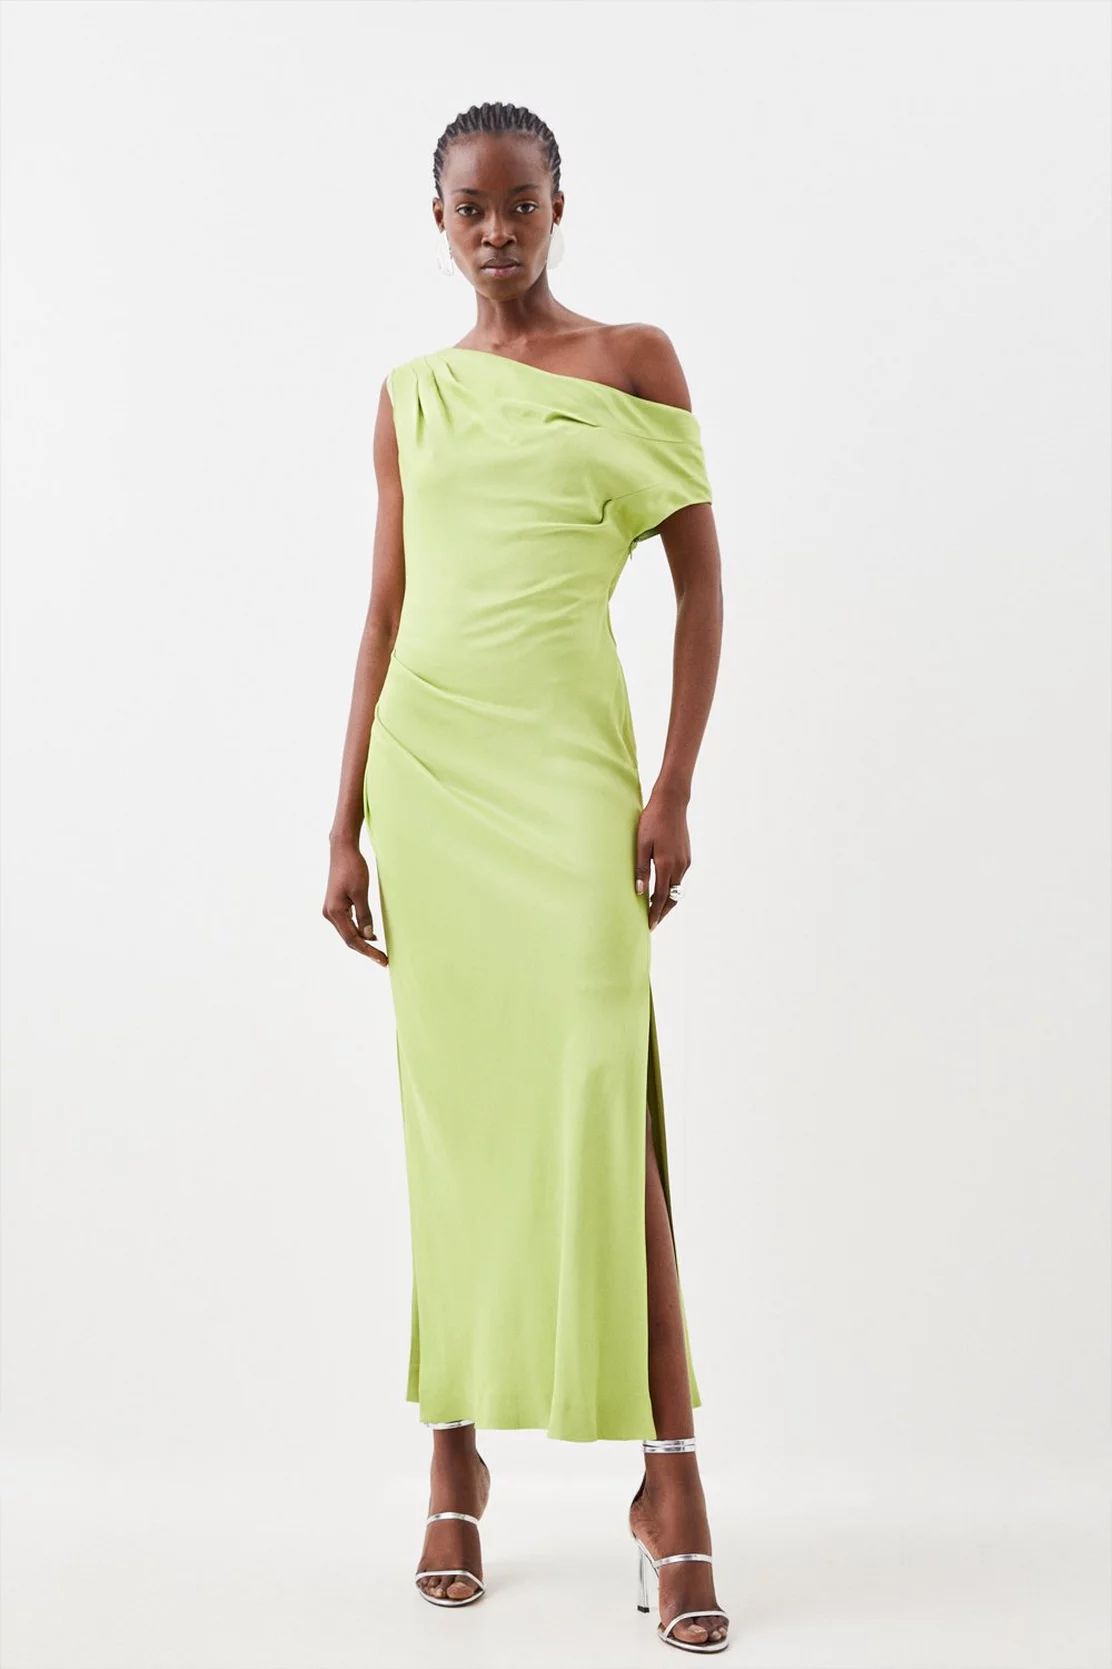 Satin Crepe One Shoulder Woven Maxi Dress | Karen Millen UK + IE + DE + NL